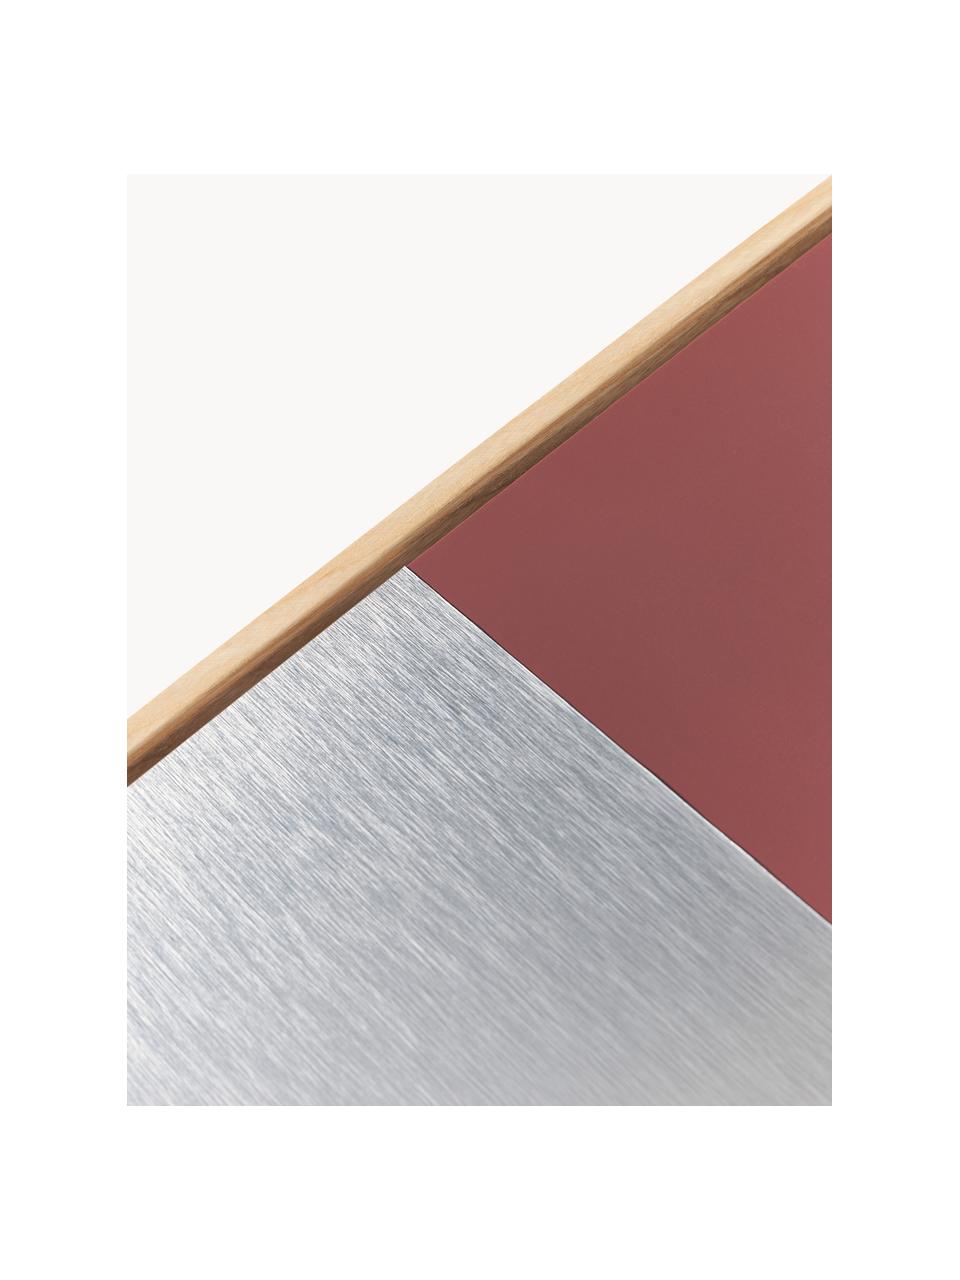 Wandobjecten Duo, set van 4, Eikenhout, vezelplaat van gemiddelde dichtheid (MDF), aluminium, Eikenhout, zilverkleurig, roodbruin, B 50 x H 50 cm